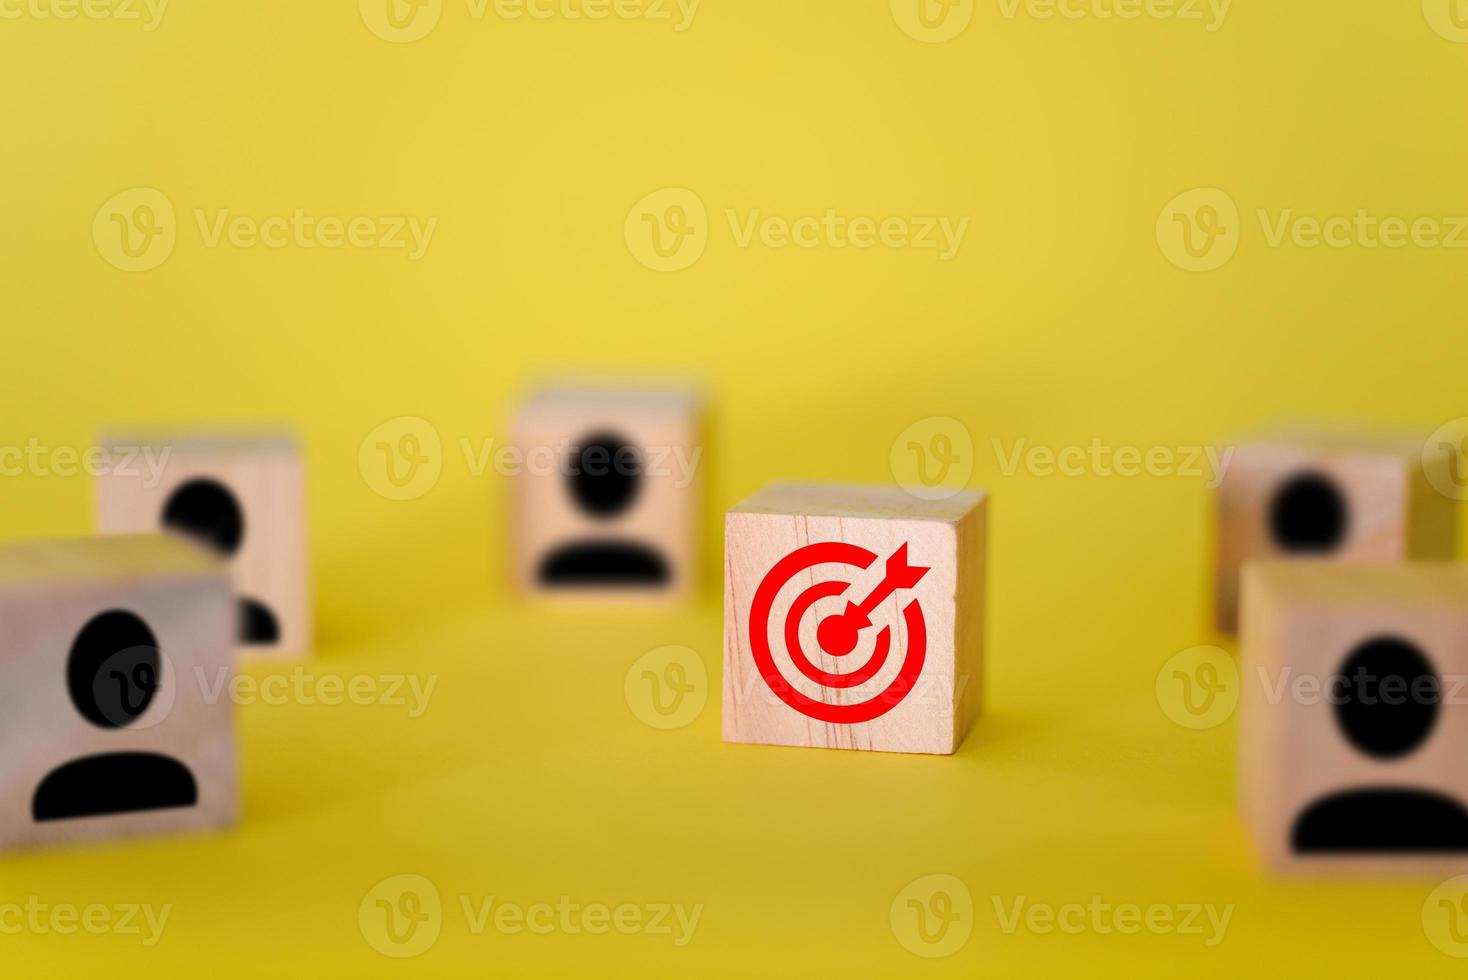 la cible est sur des cubes en bois, autour de la cible se trouvent des signes de personnes sur des cubes en bois, fond jaune. photo